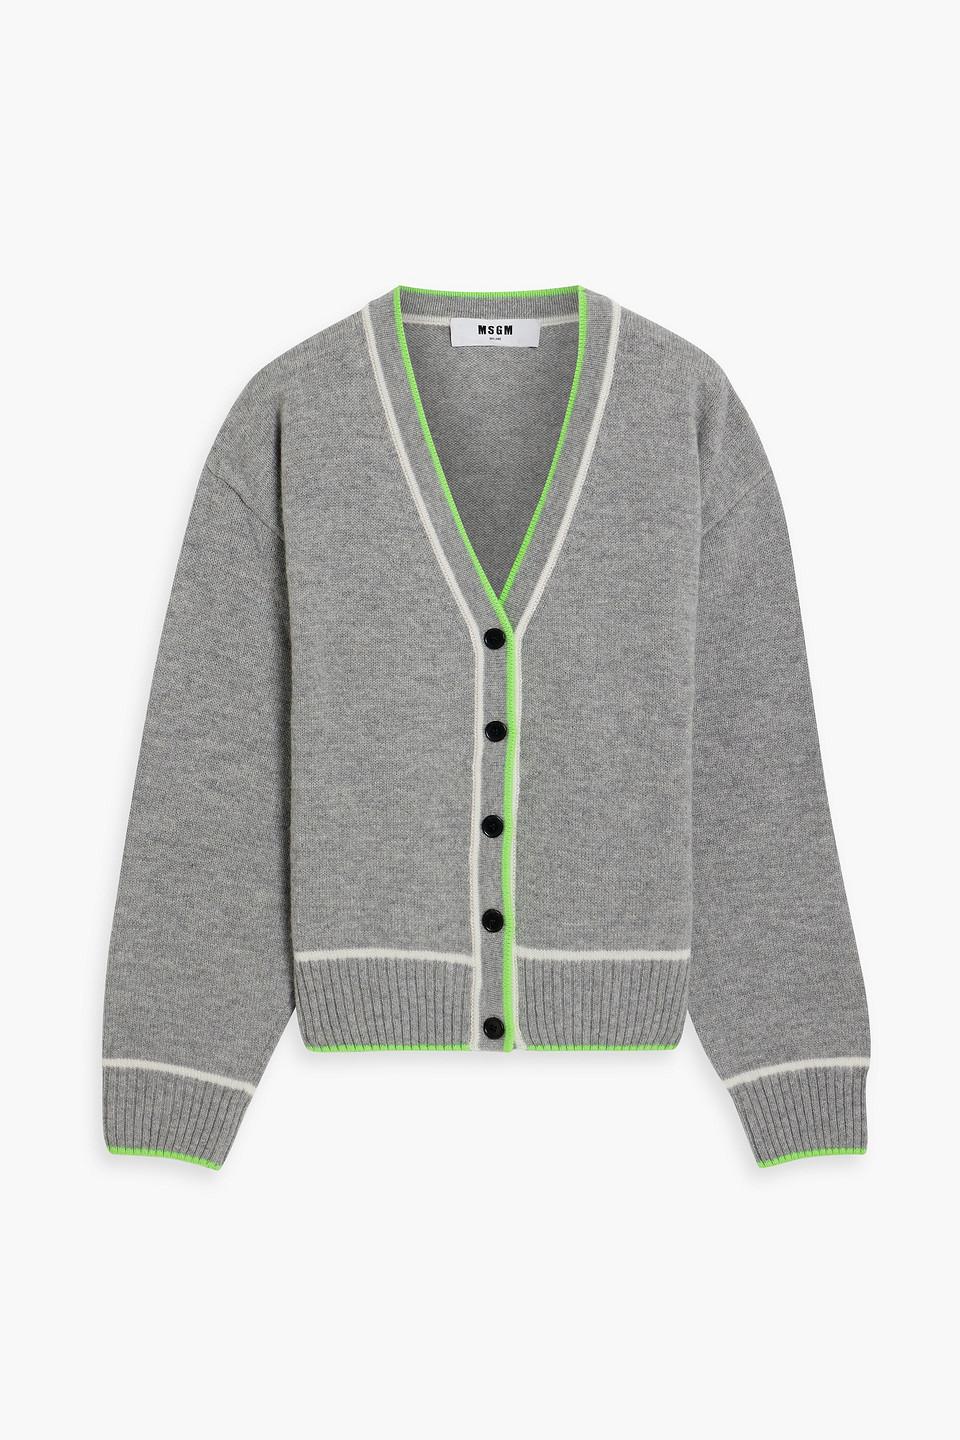 MSGM Wool Cardigan in Grey | Lyst Canada